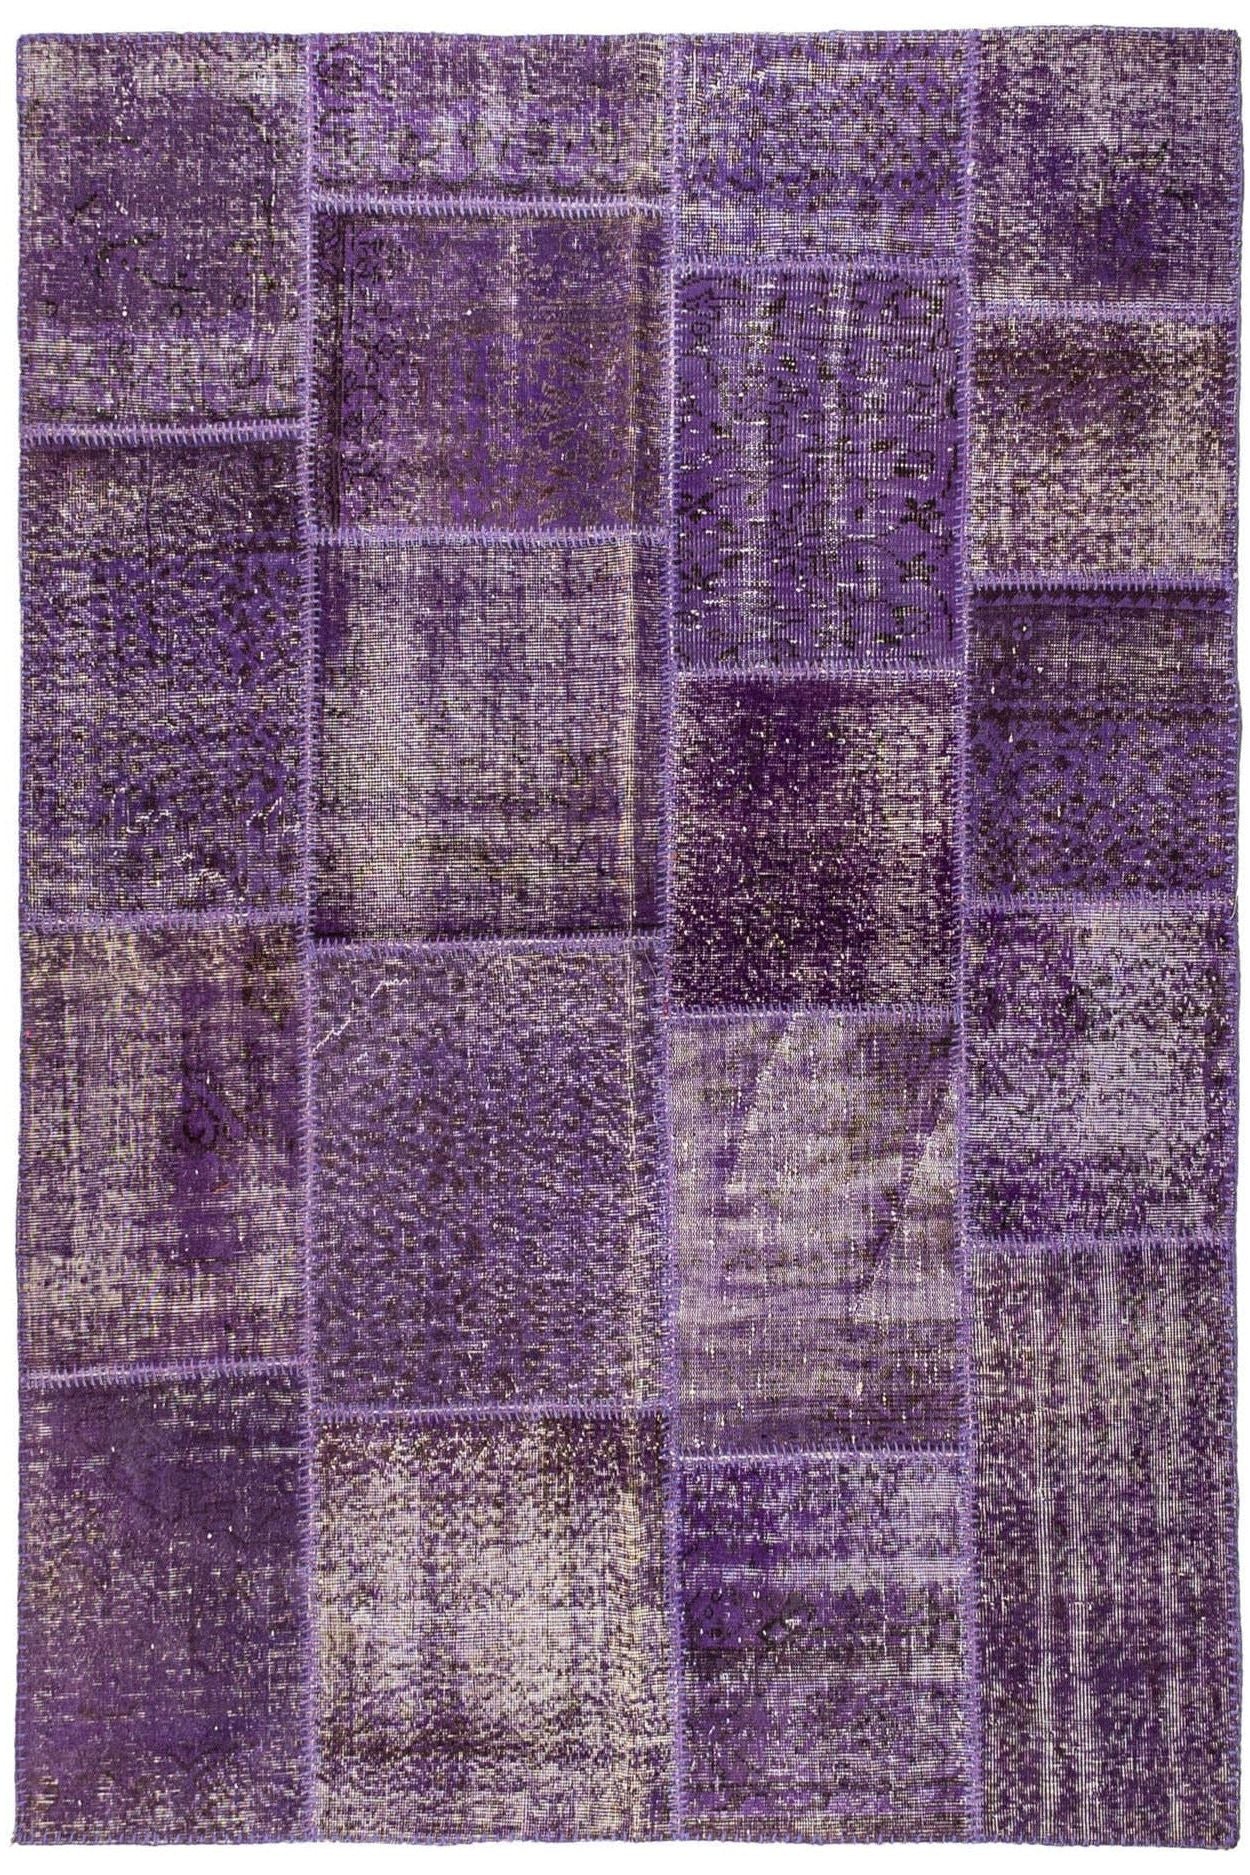 #Turkish_Carpets_Rugs# #Modern_Carpets# #Abrash_Carpets#Abrash-Bahrain-5855-170X240